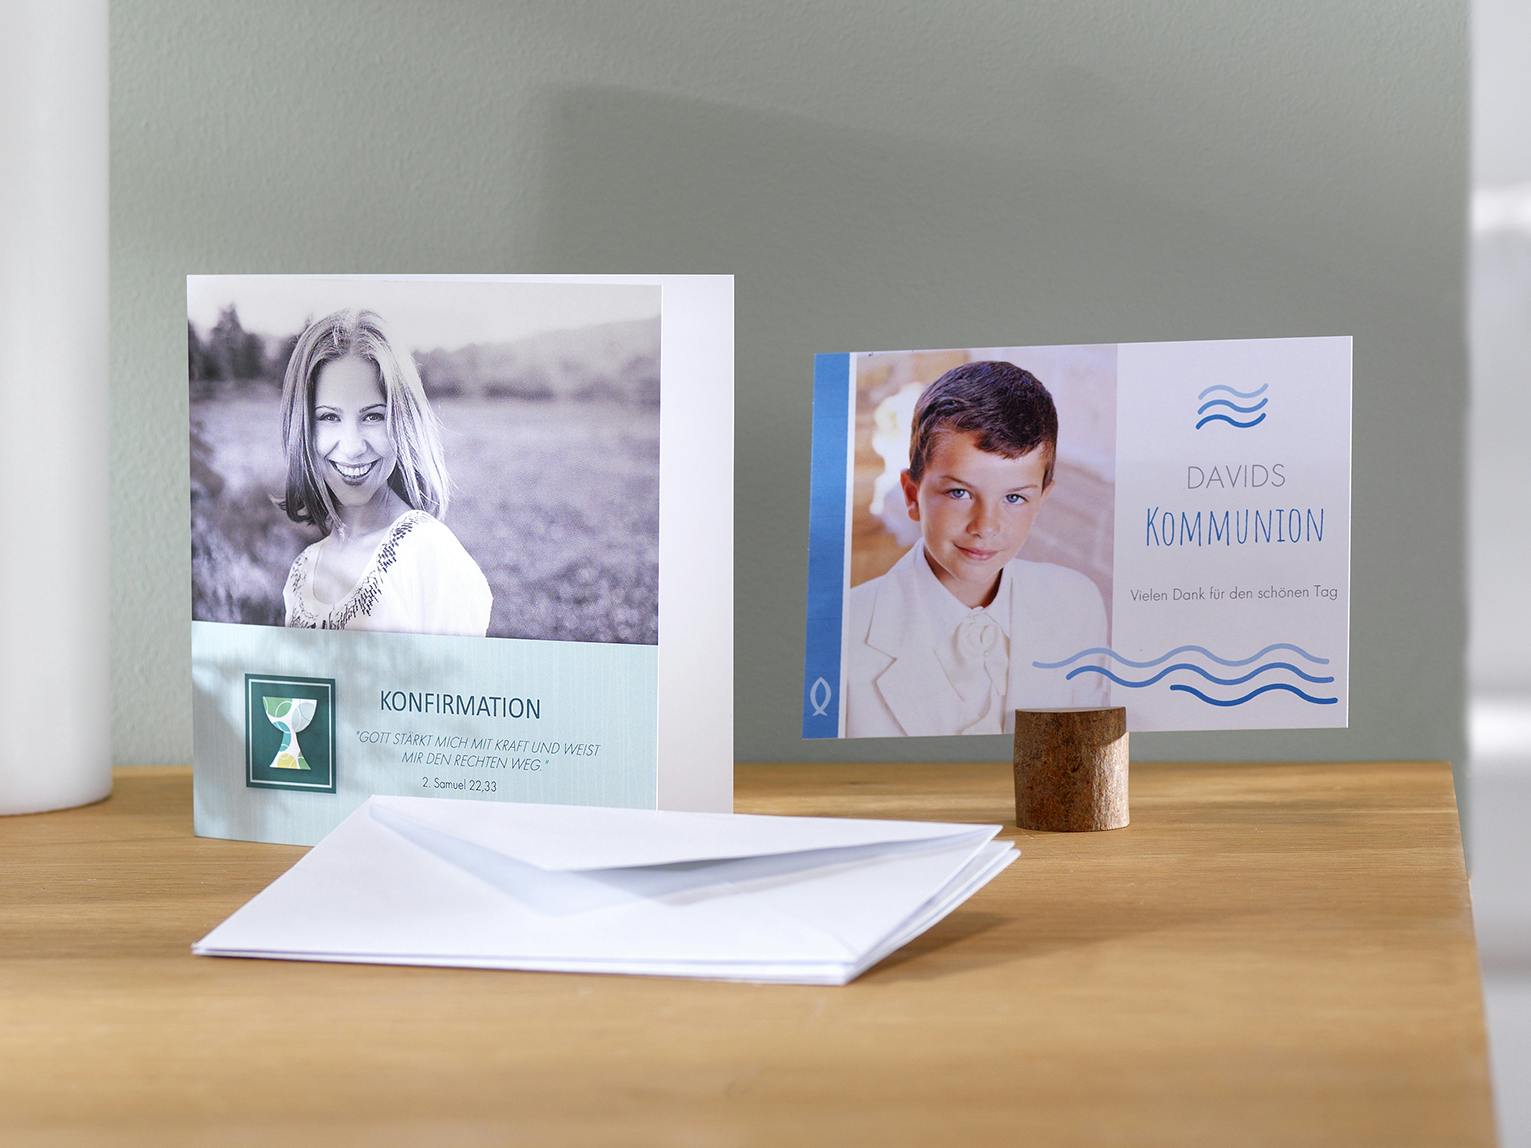 Tarjetas personalizadas con fotos como invitaciones para comunión